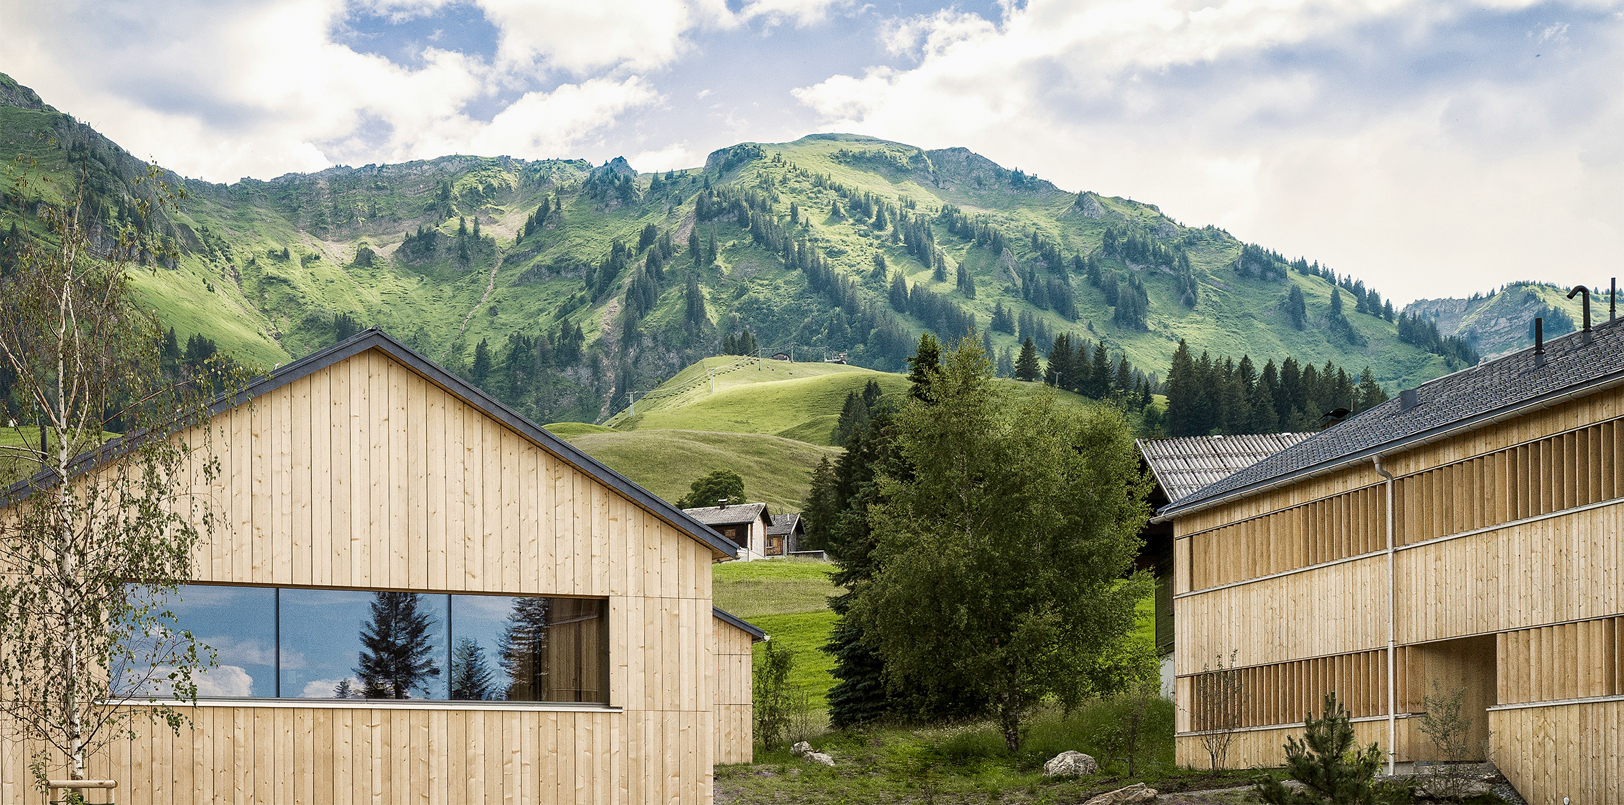 Fuchsegg Eco Lodge Holzgebäude vor grüner Natur mit Bergen im Hintergrund